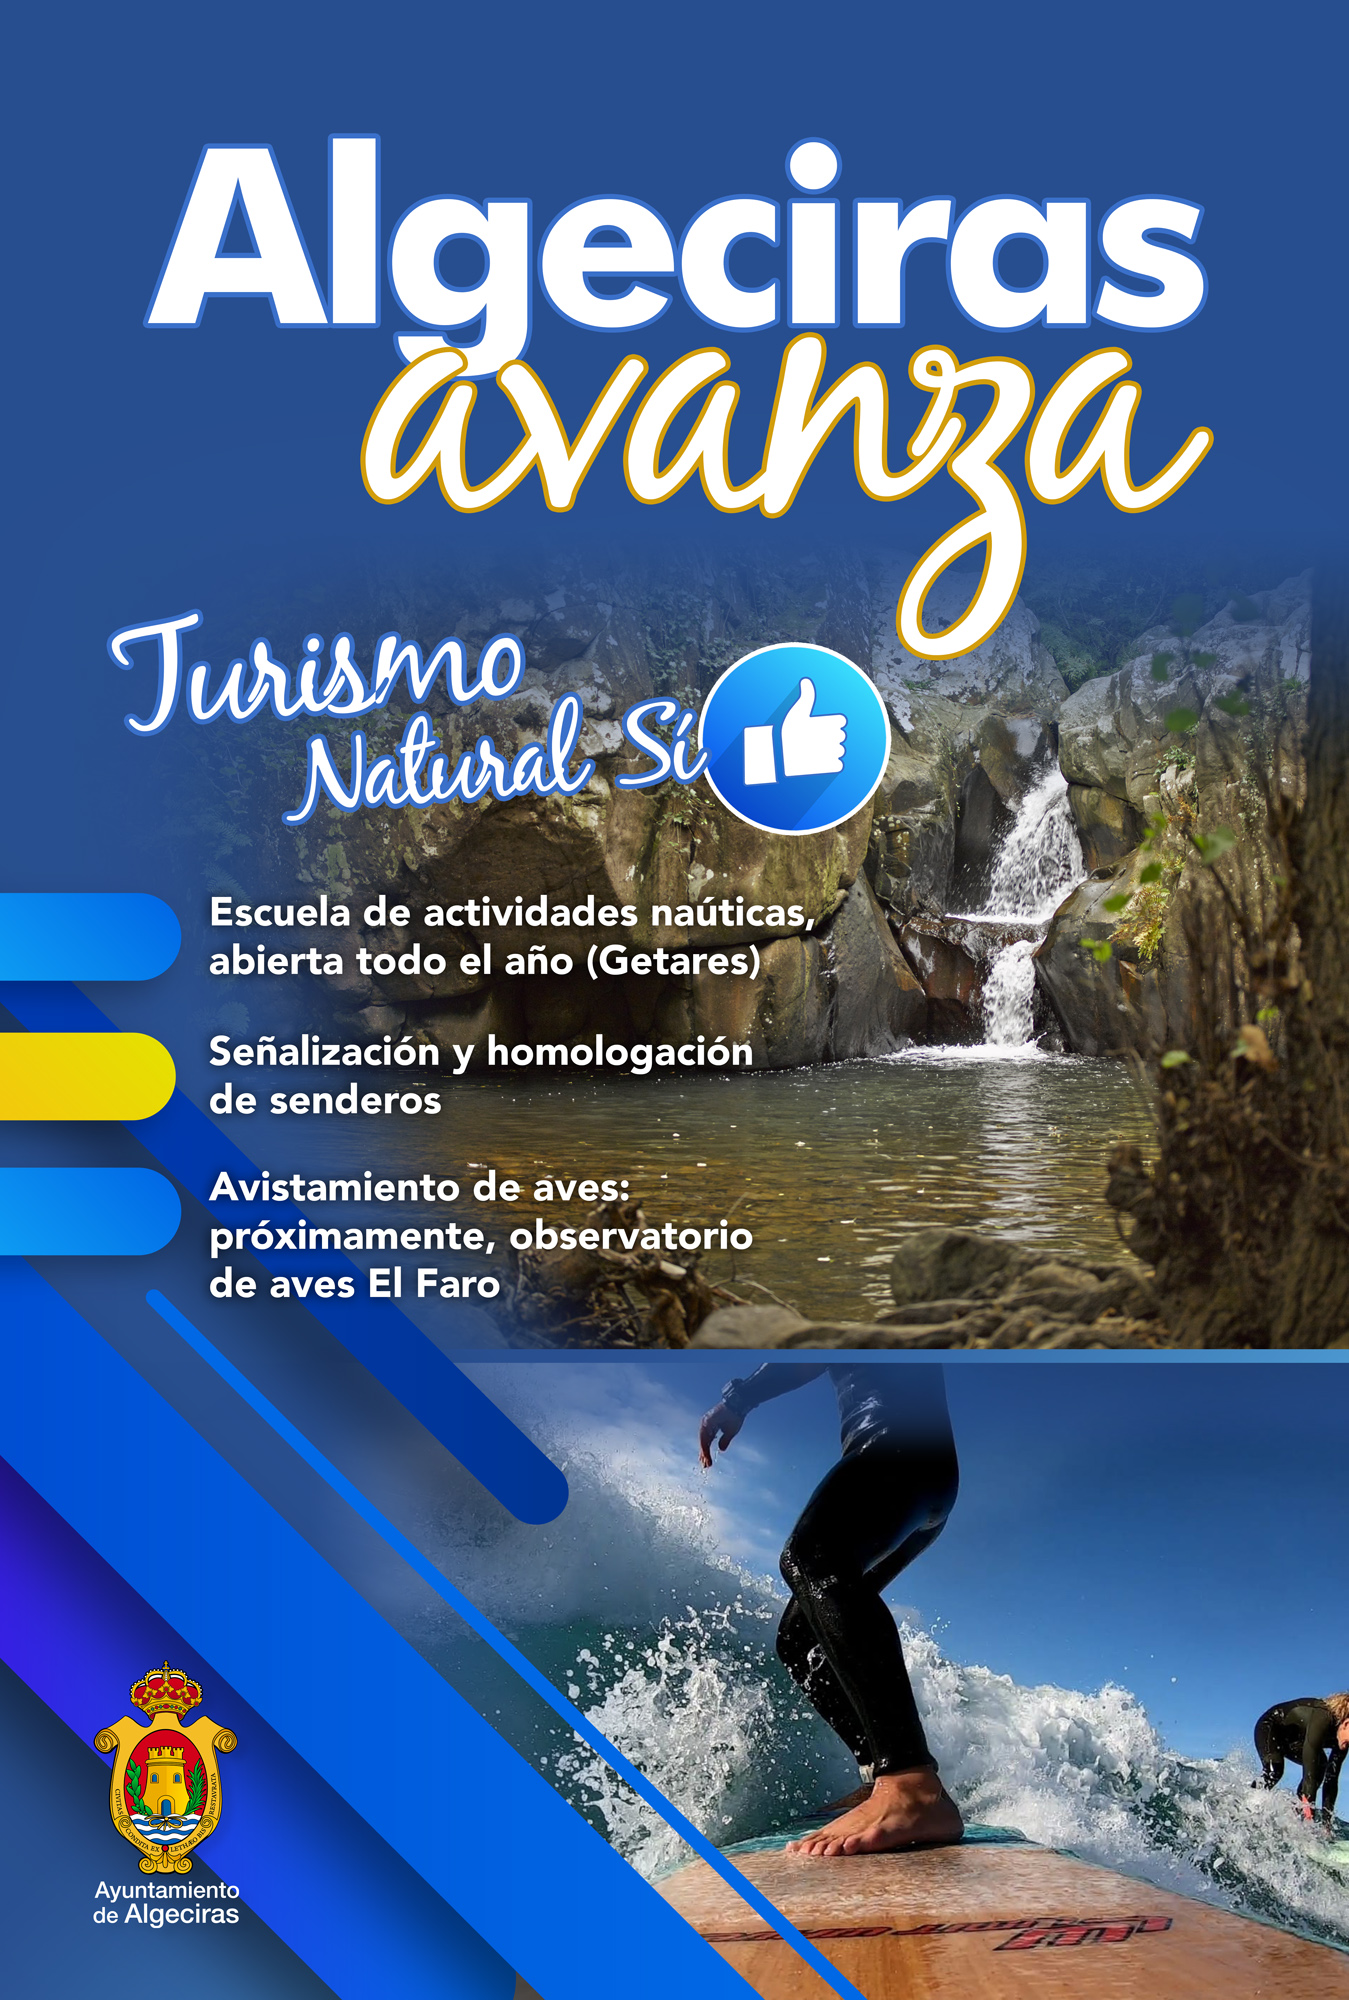 Algeciras avanza Turismo